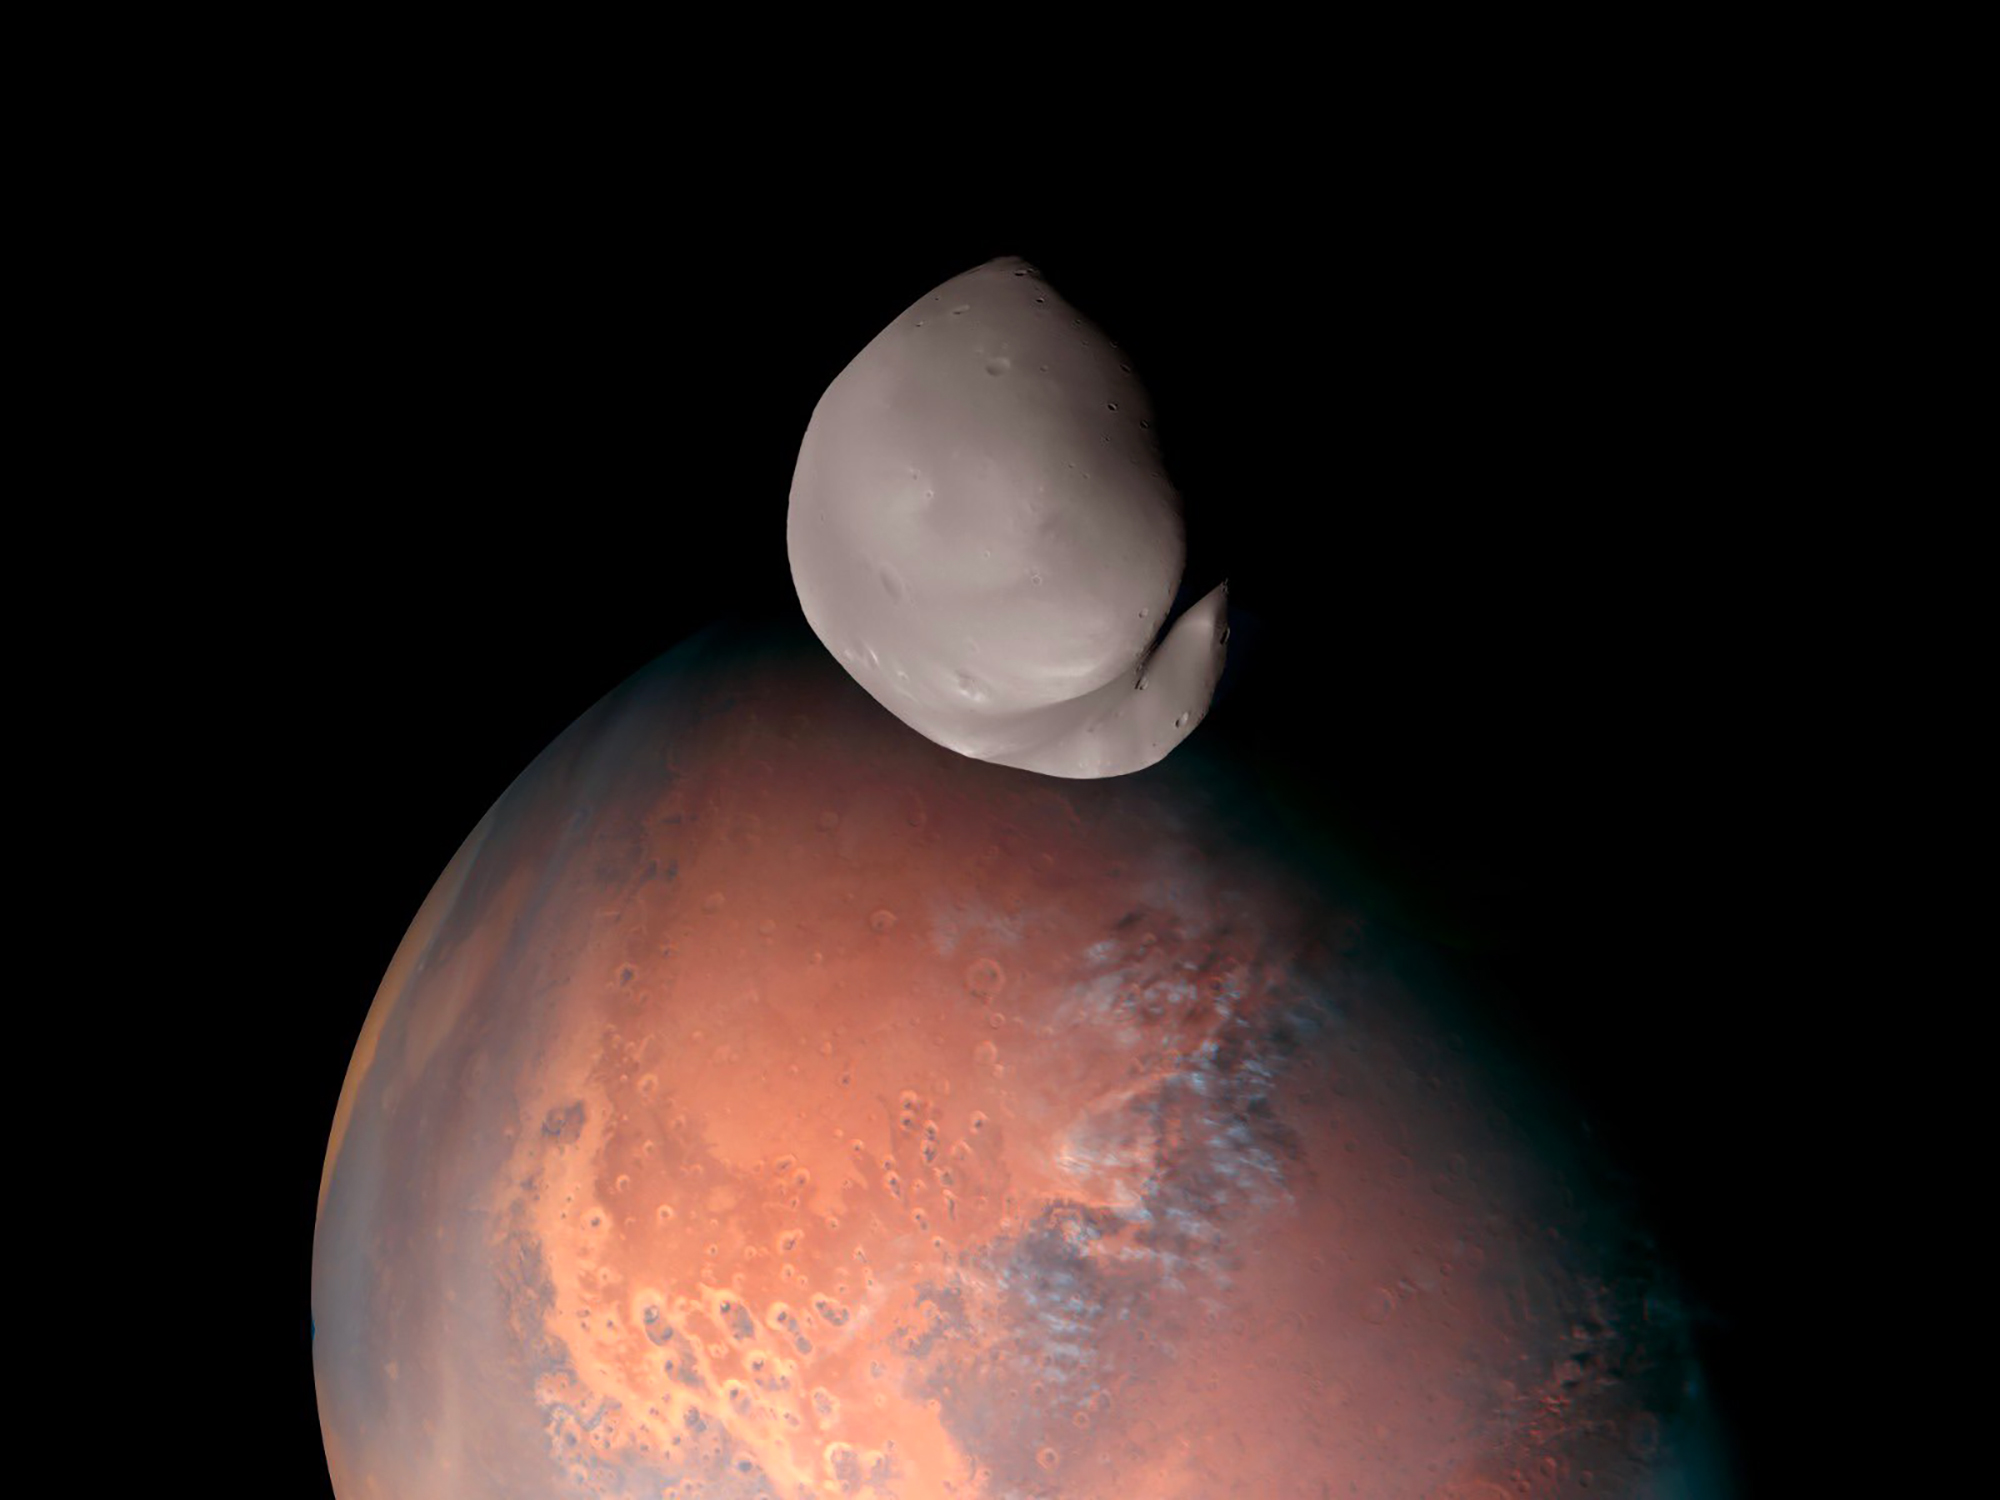 Le satellite de Mars Deimos observé par la sonde Hope des Émirats arabes unis. © Hope Mars Mission